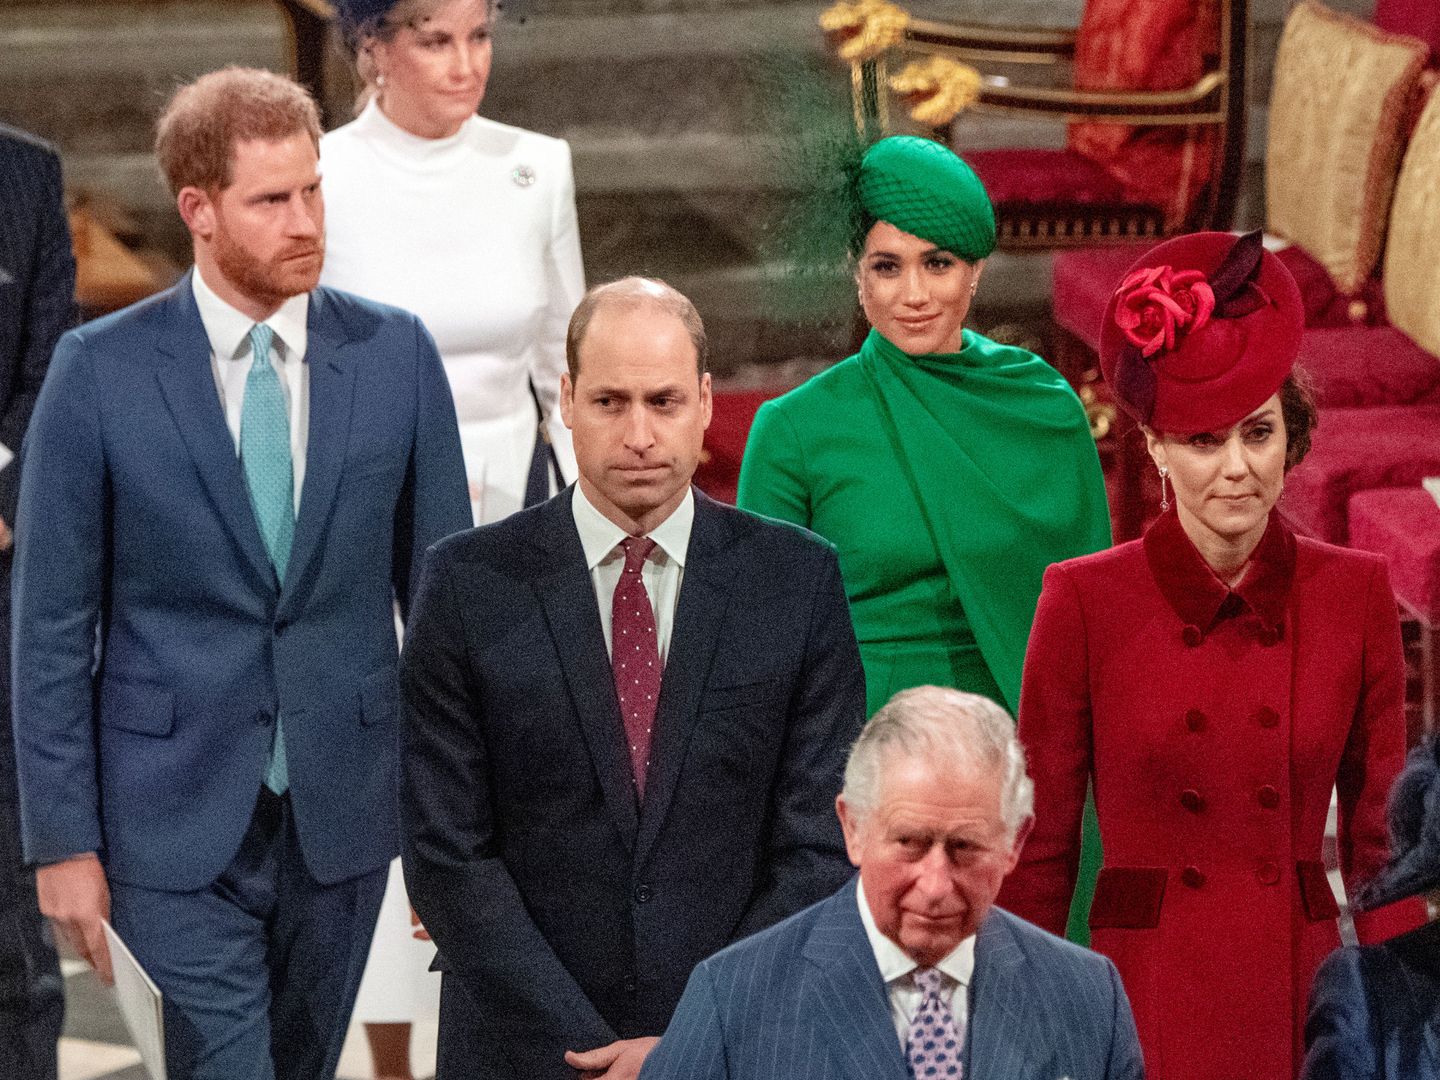 Los duques de Sussex, junto a los duques de Cambridge y el príncipe Carlos, en su último compromiso público. (Reuters)